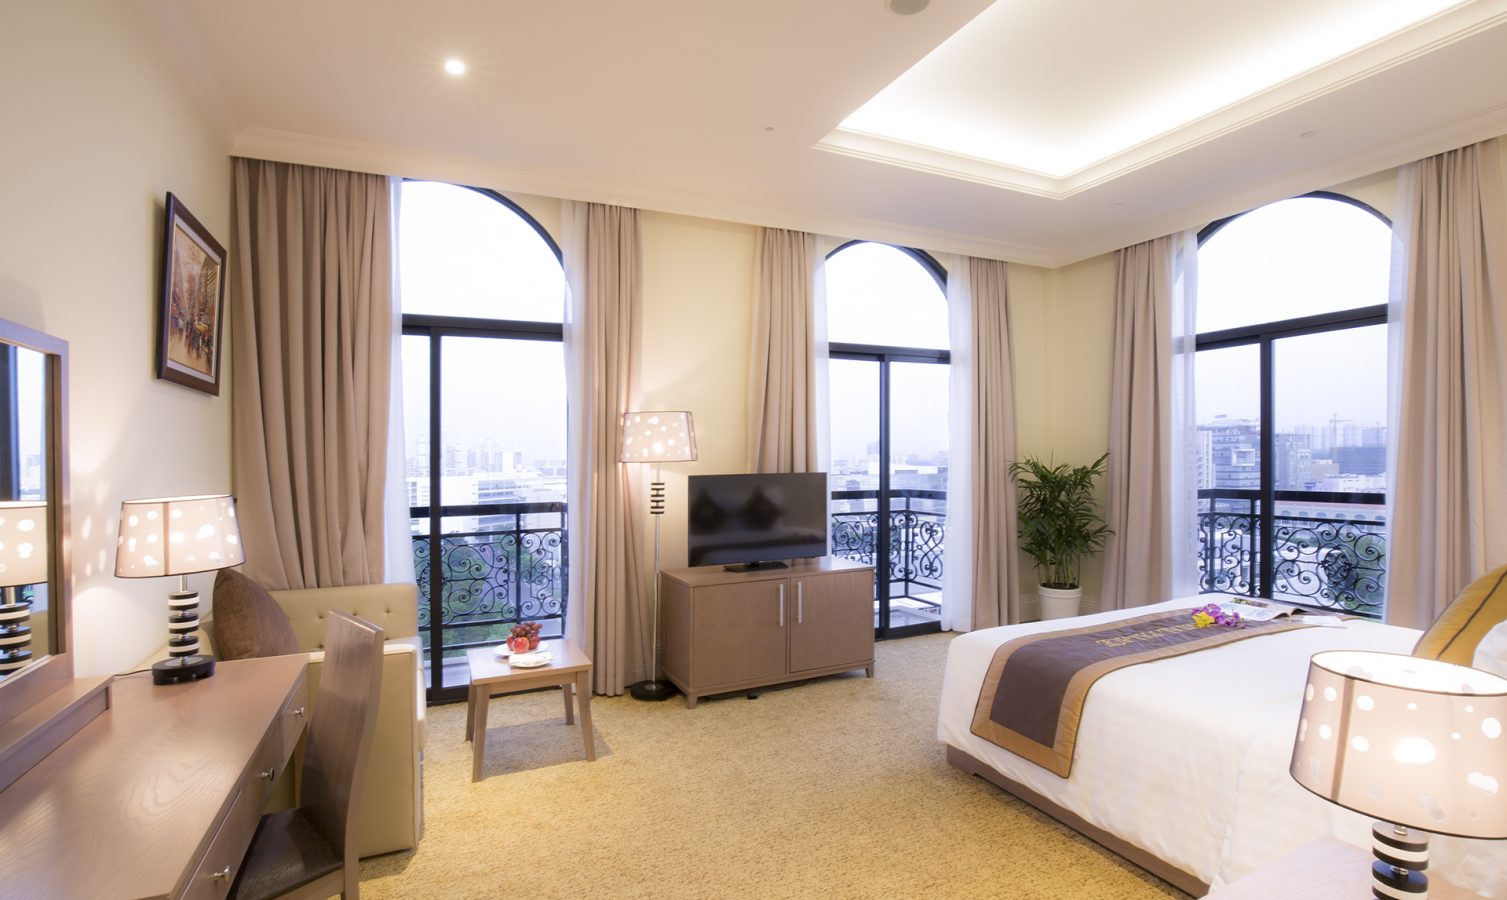 Bí quyết chọn khách sạn 4 sao giá rẻ tại thành phố Hồ Chí Minh